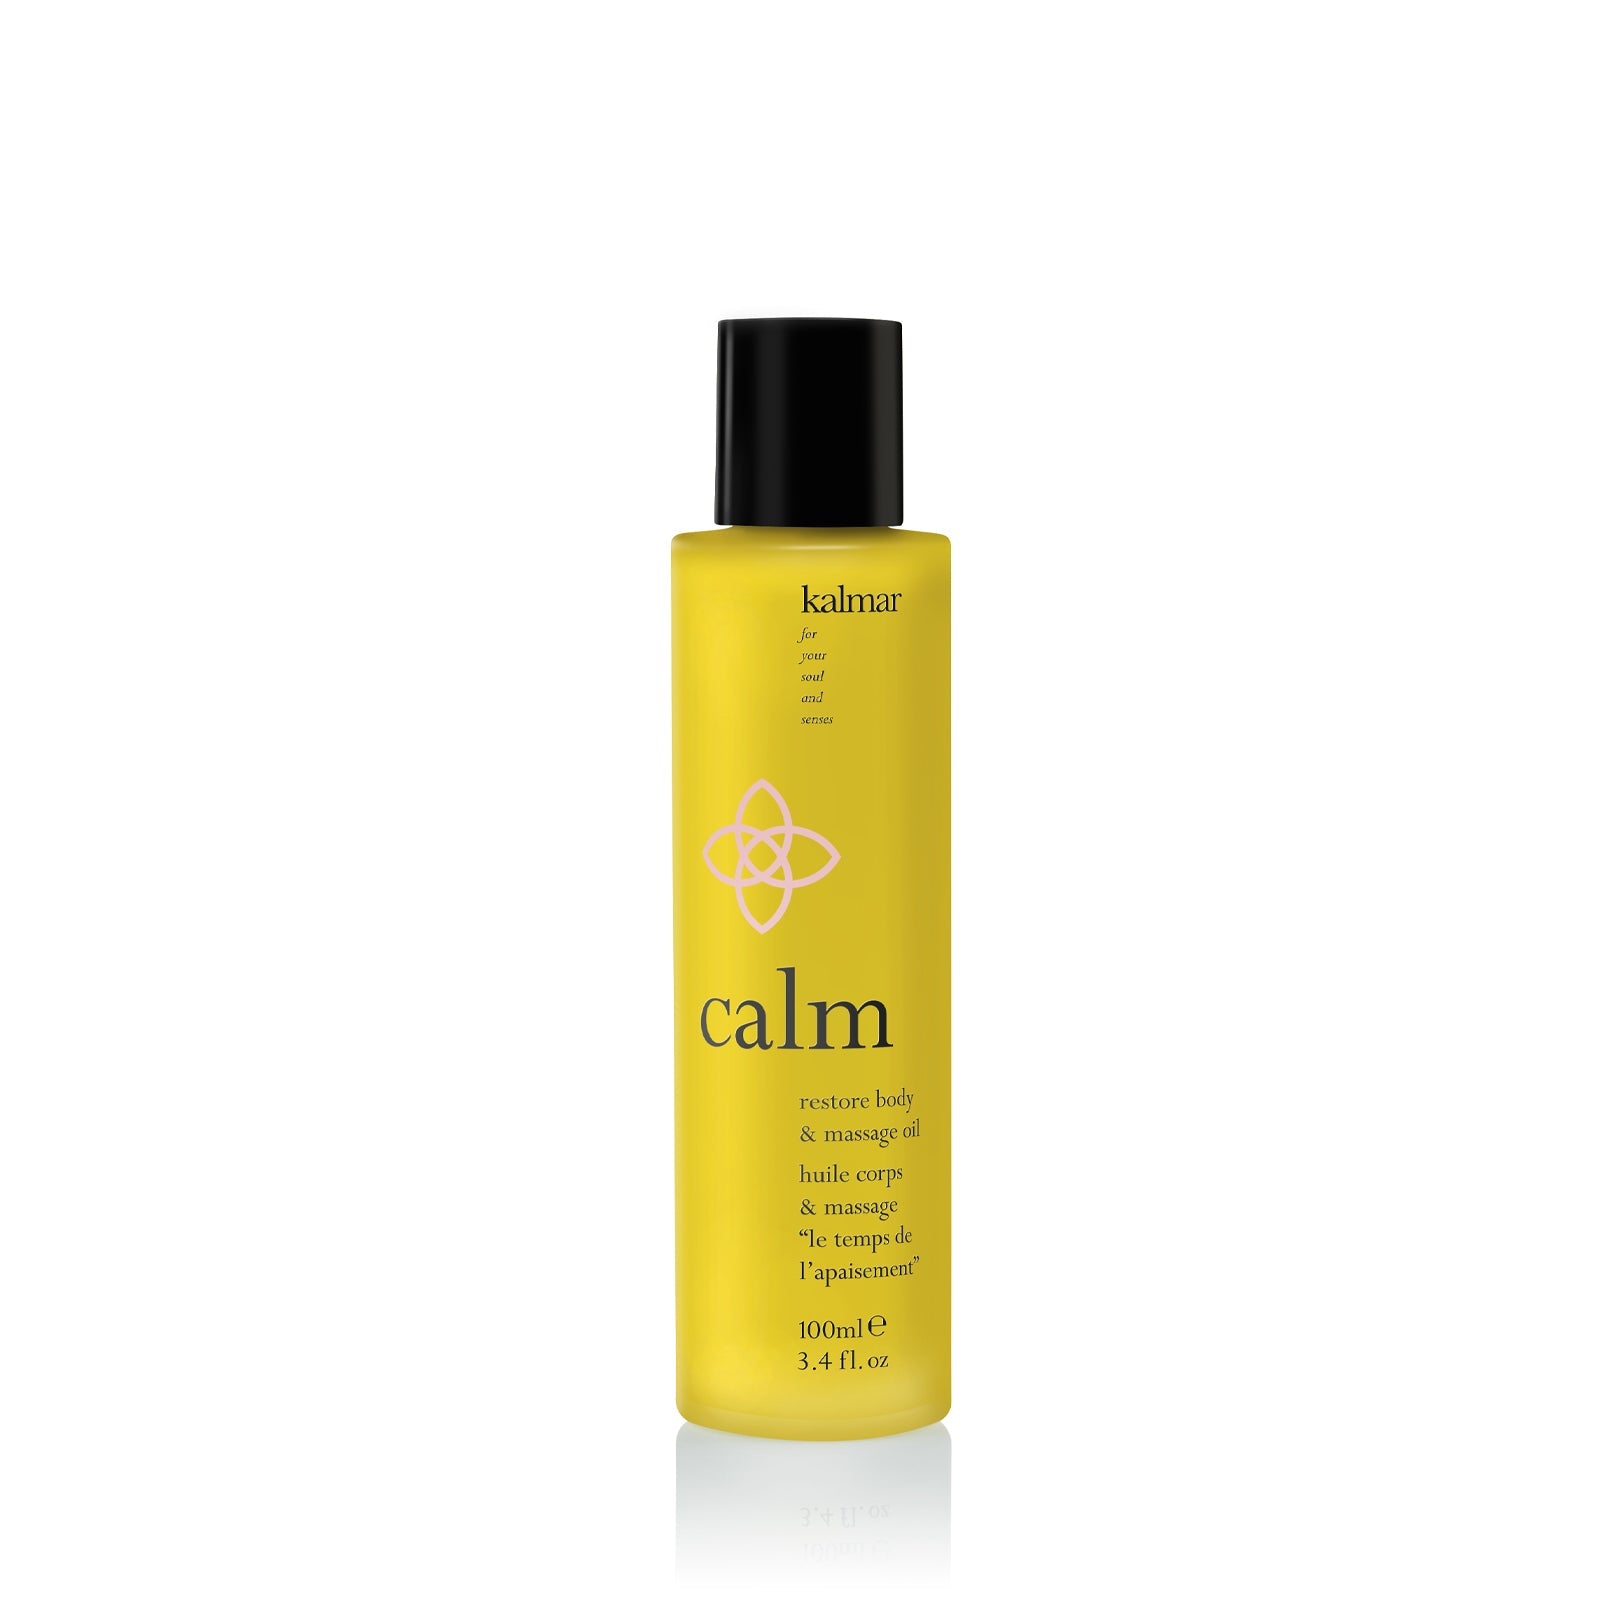 Calm Restore Body & Massage Oil